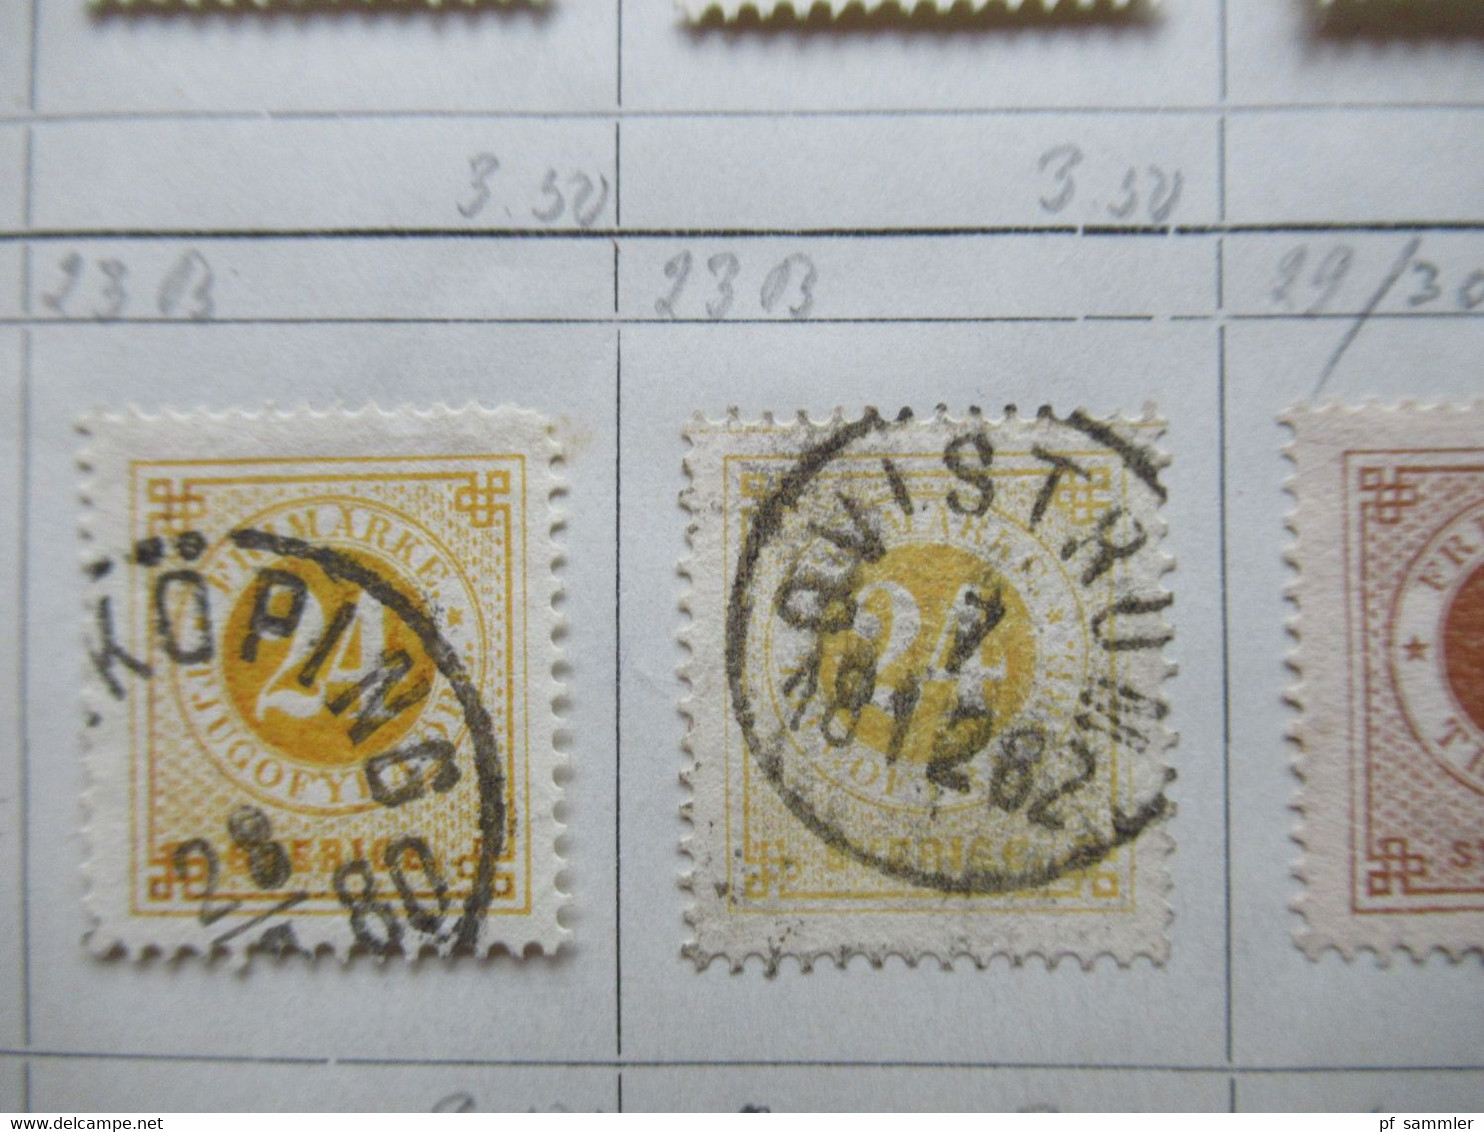 Schweden Klassik 1855 - 1874 viele gestempelte Marken auf Auswahlseiten uraltes Auktionslos Edgar Mohrmann Hamburg